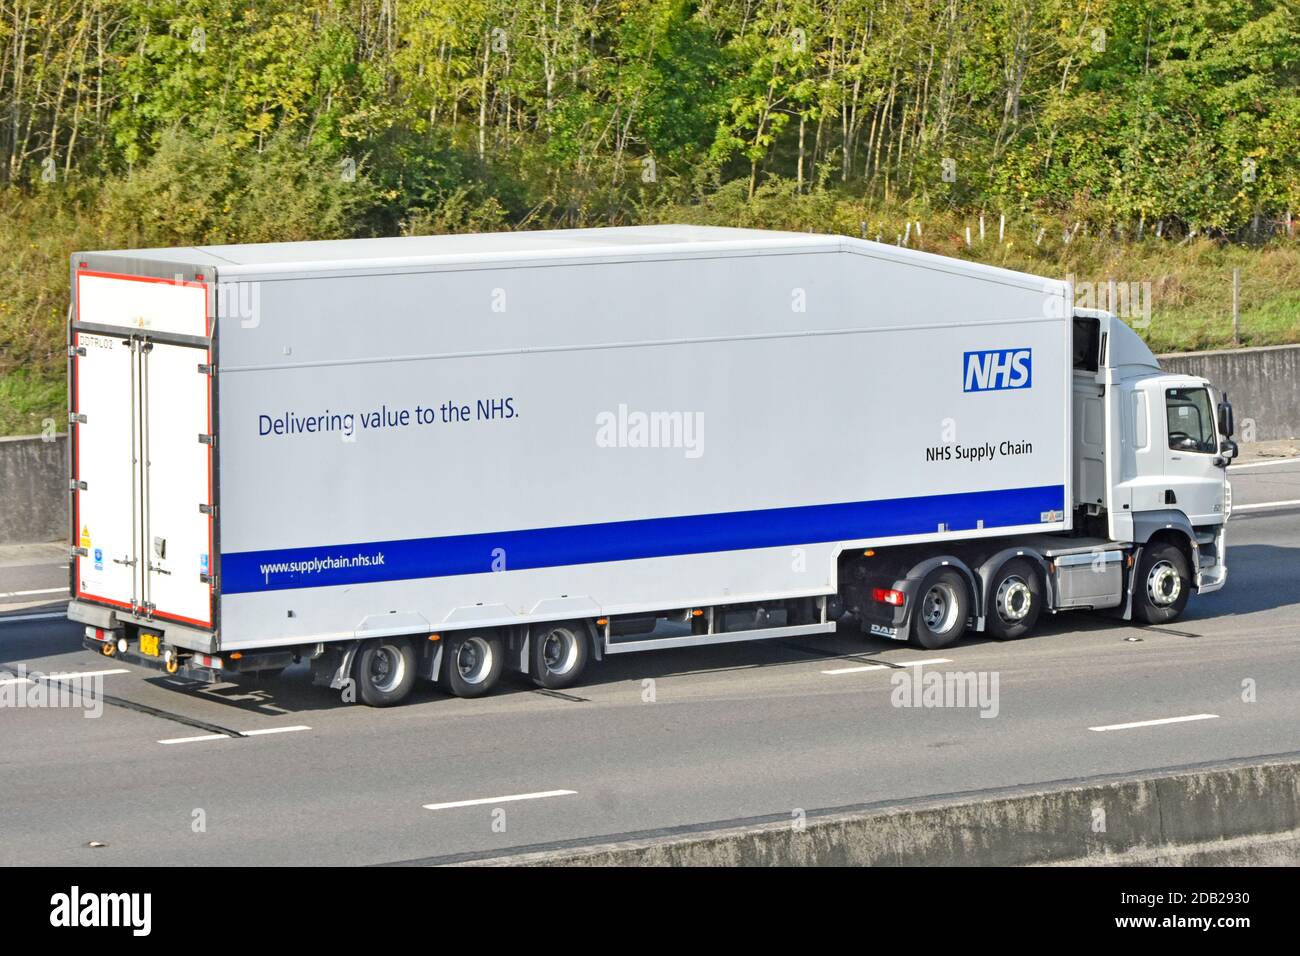 NHS cadena de suministro camión de entrega hgv y remolque articulado ofrecer valor de salud médica a los servicios nacionales de salud que impulsan Autopista Reino Unido Foto de stock